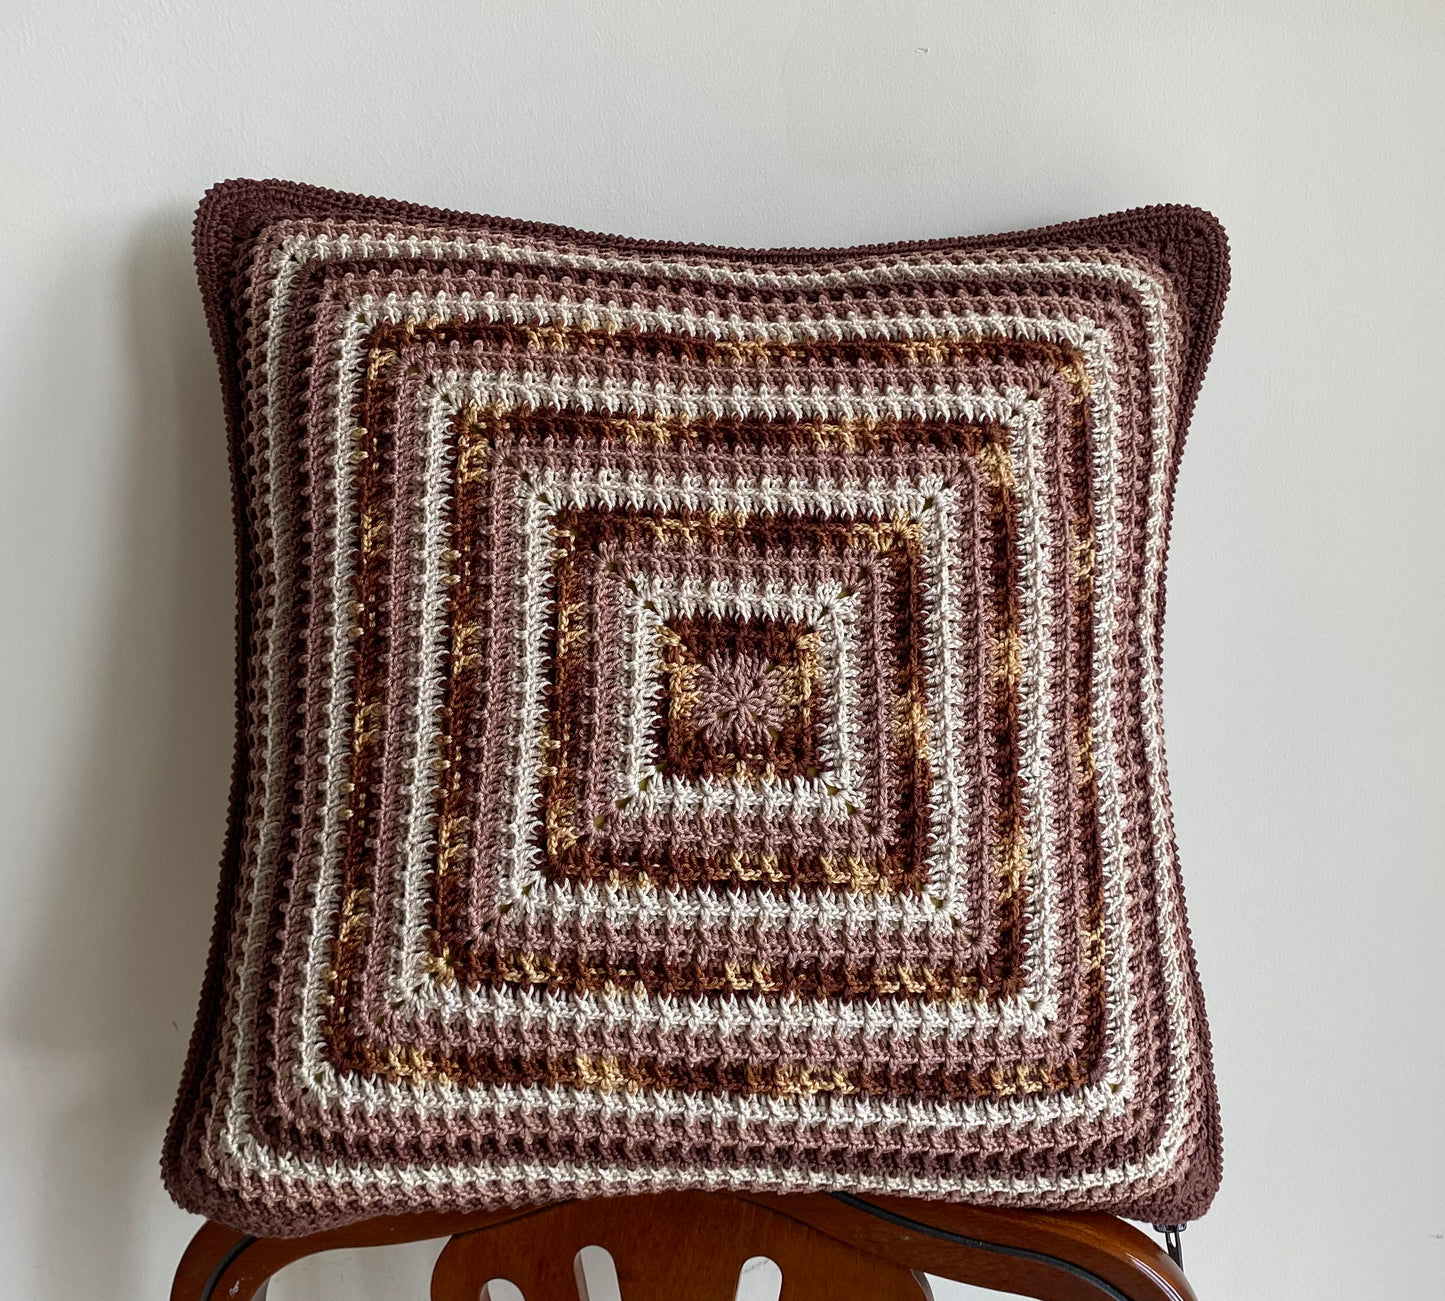 Decorative pillow cover - crochet cotton pillow case